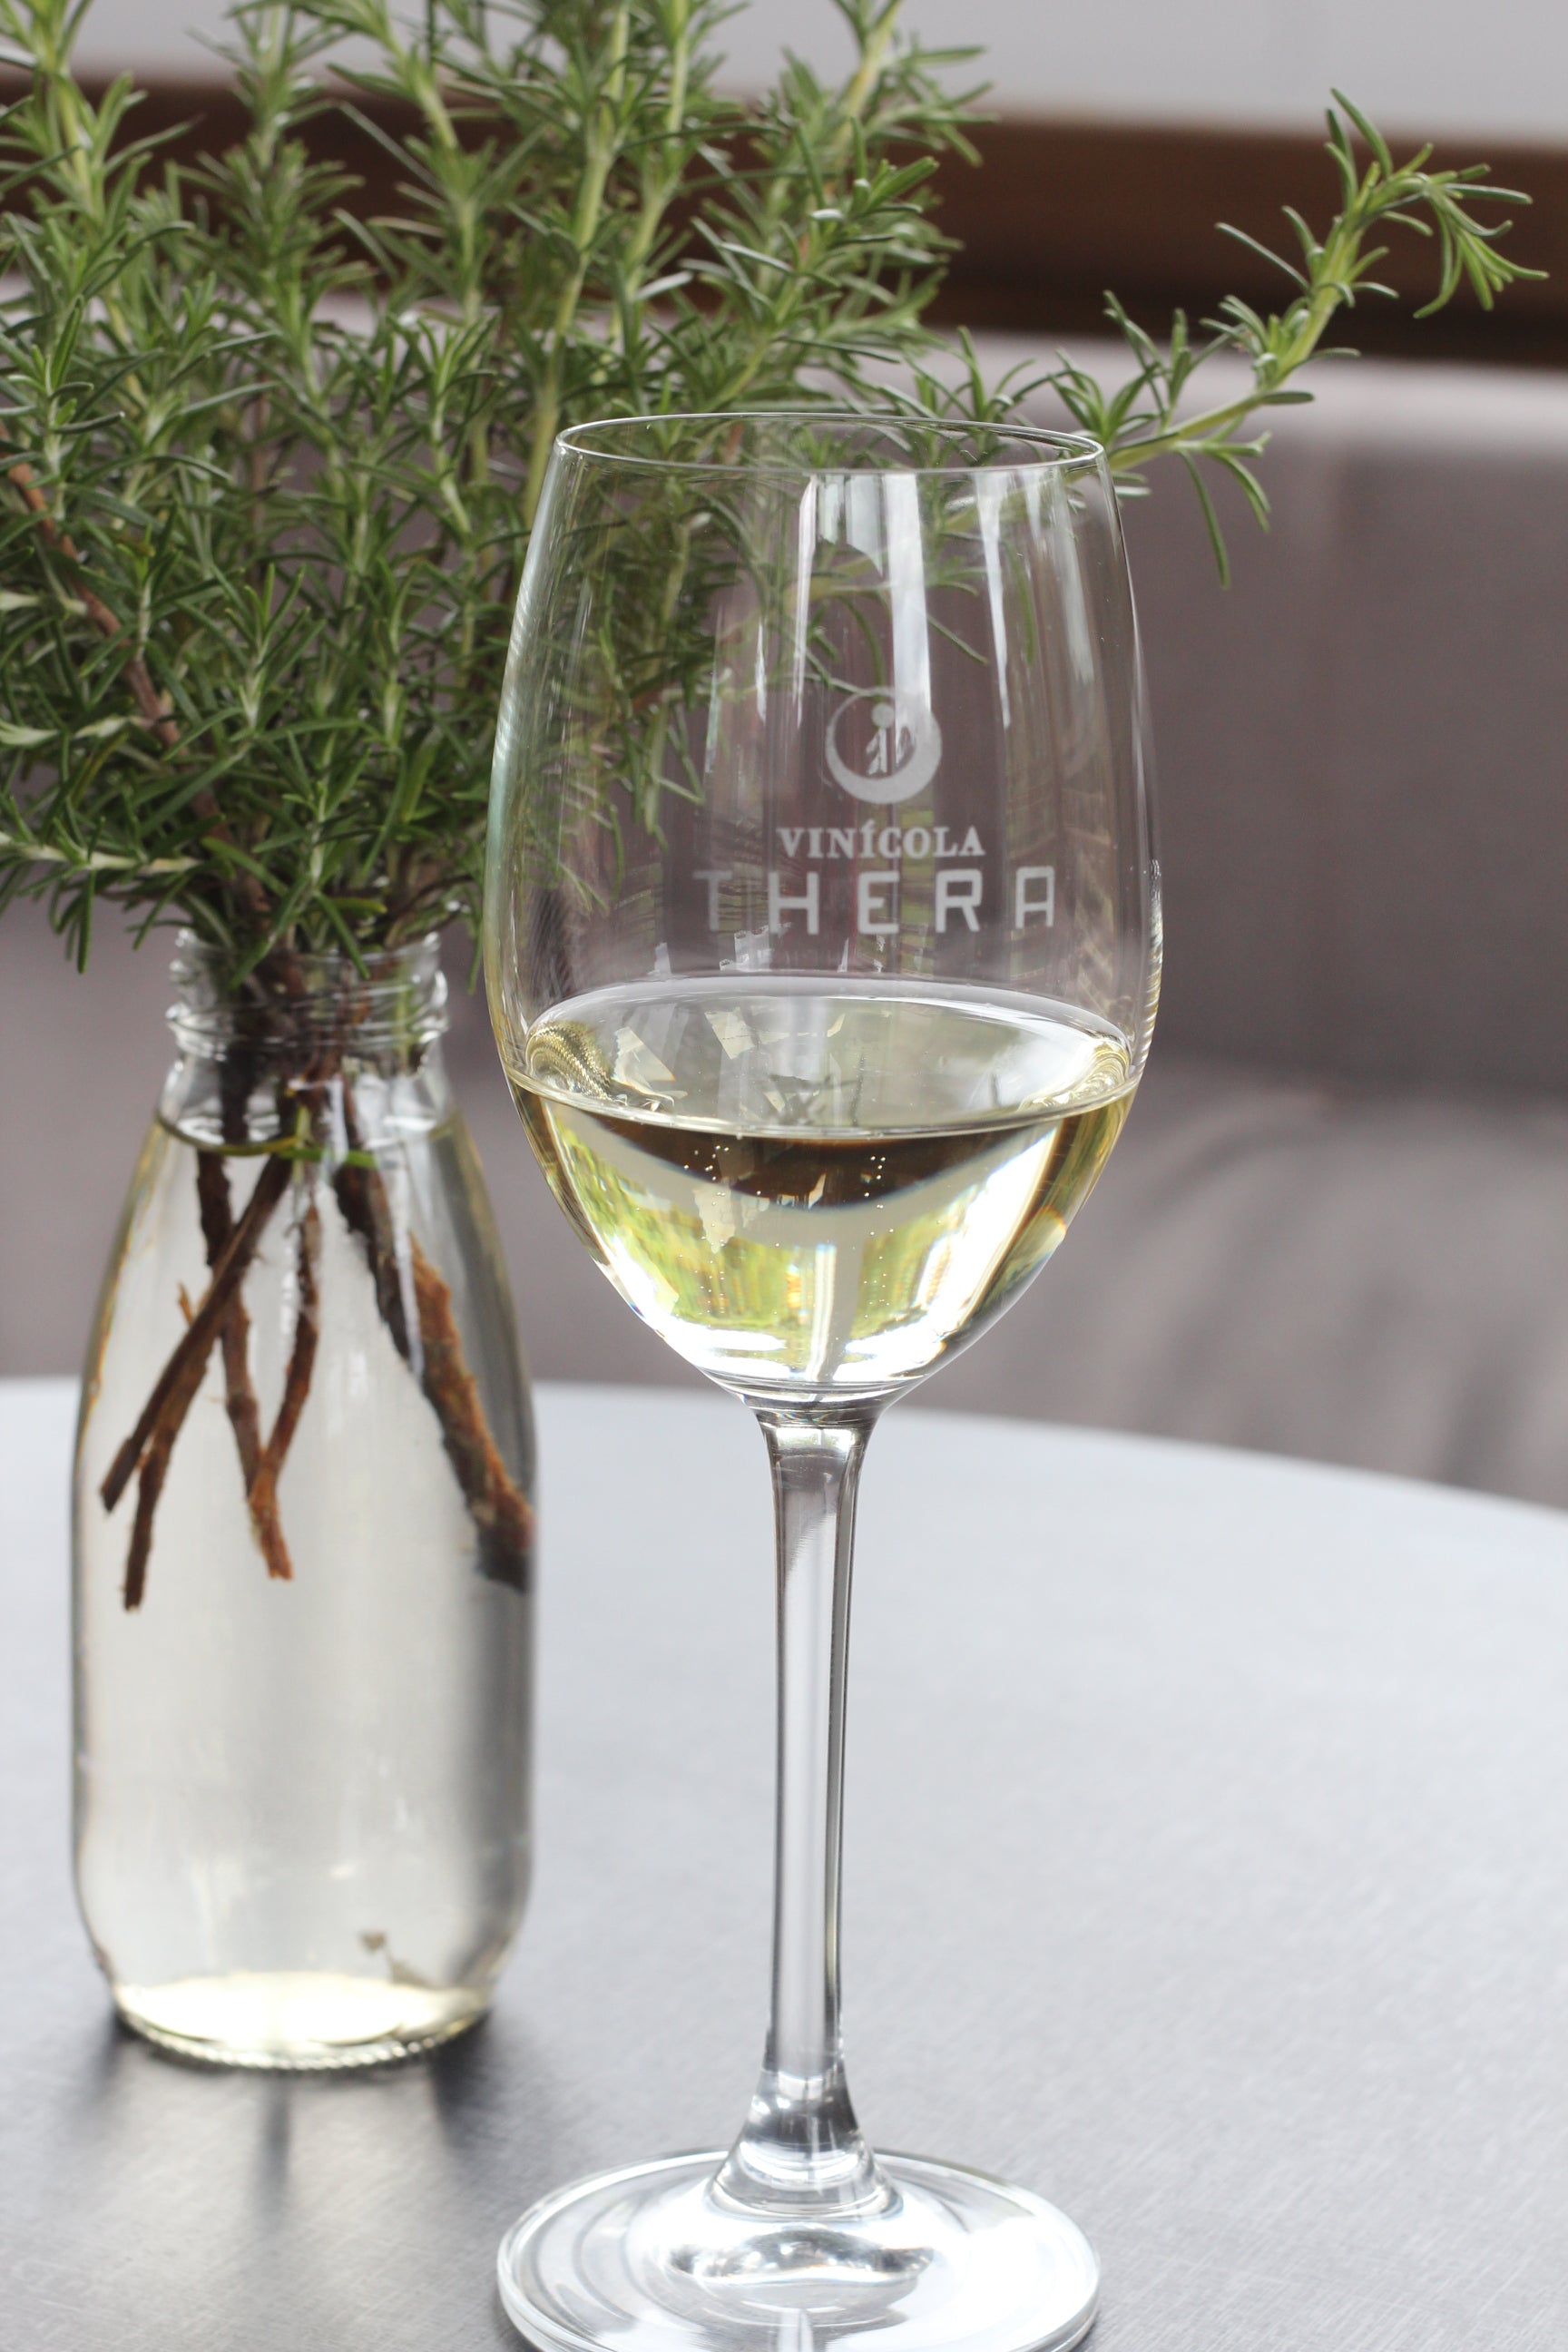 Aroma de pimentão verde no vinho surge de um composto chamado pirazina